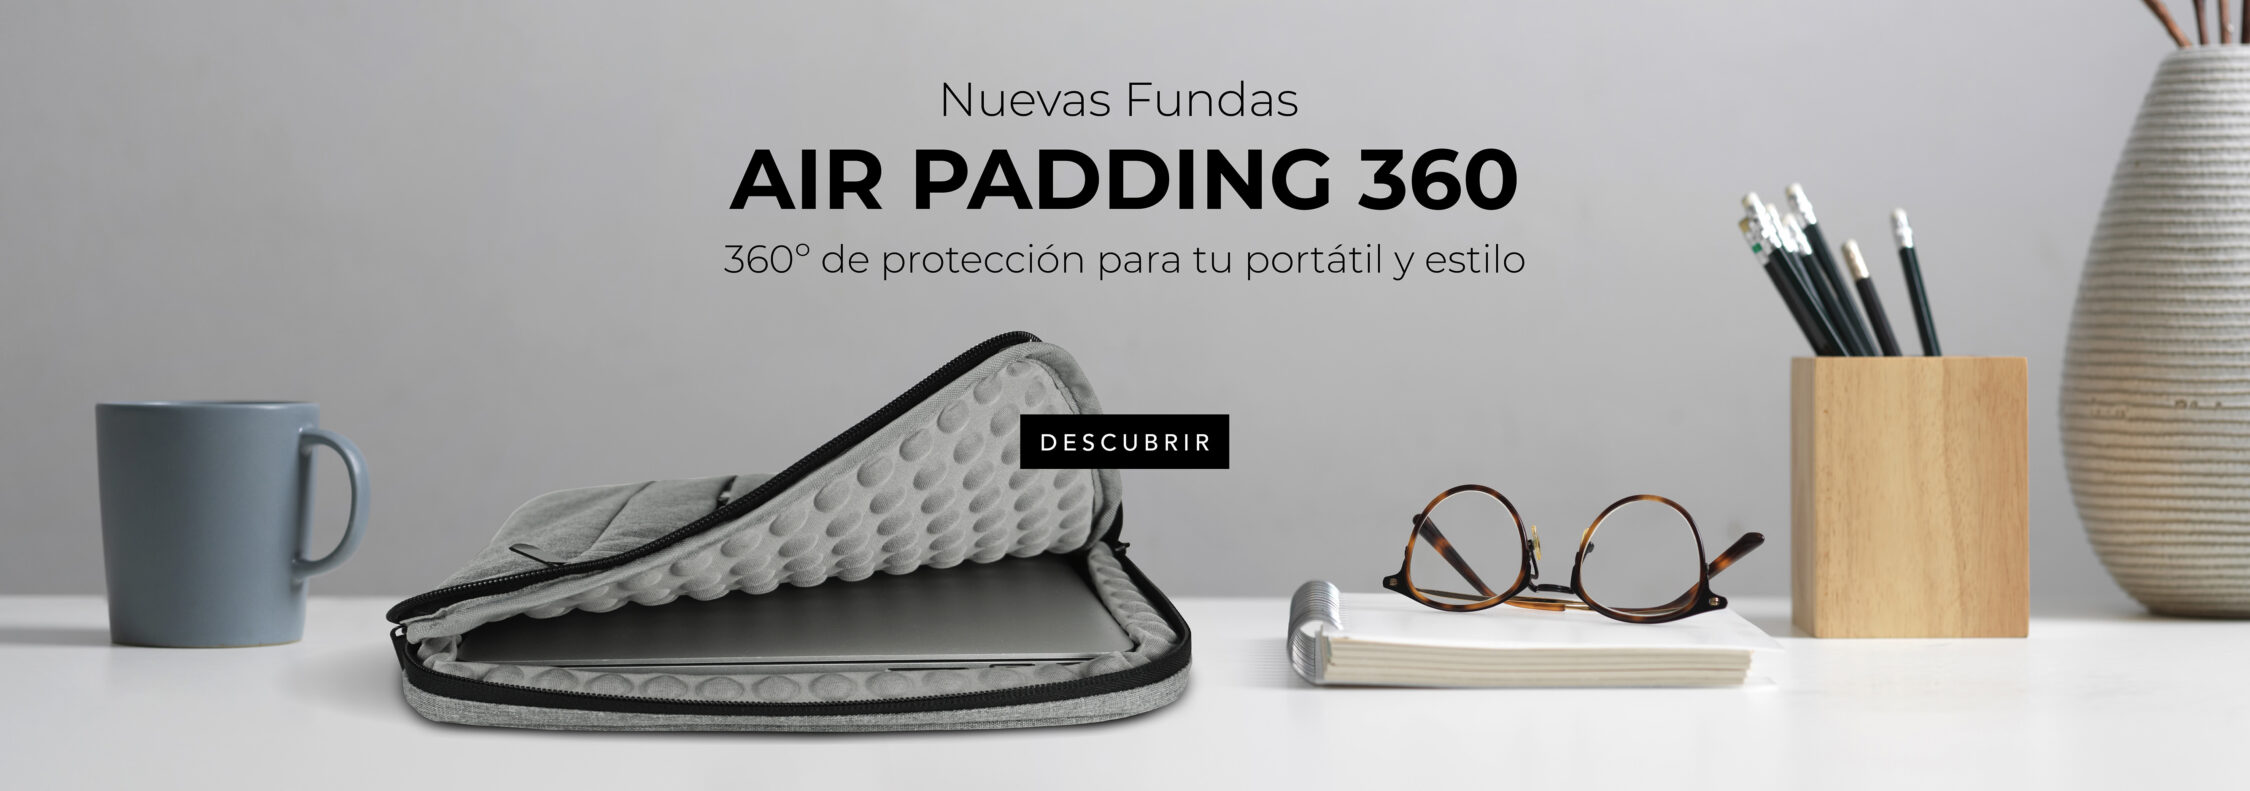 nuevas fundas para portátil air padding 360 grados de protección para tu portátil y estilo para tu outfit